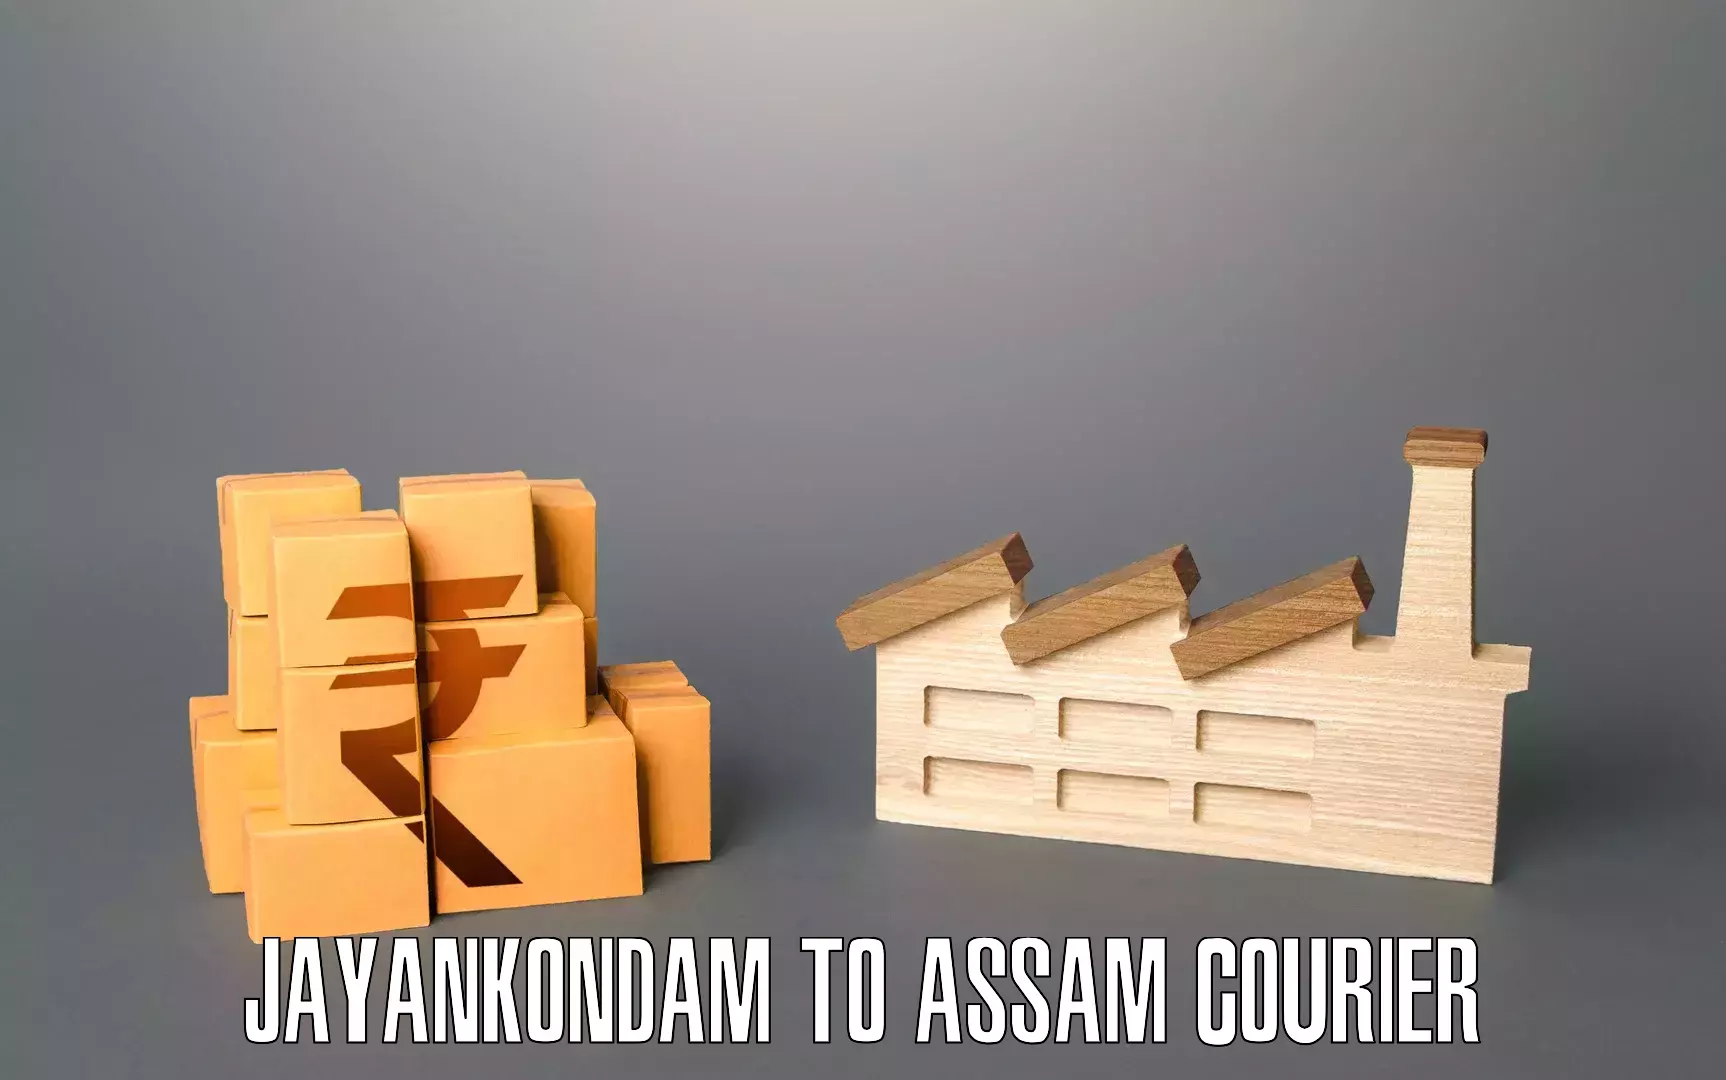 Furniture moving assistance Jayankondam to Assam